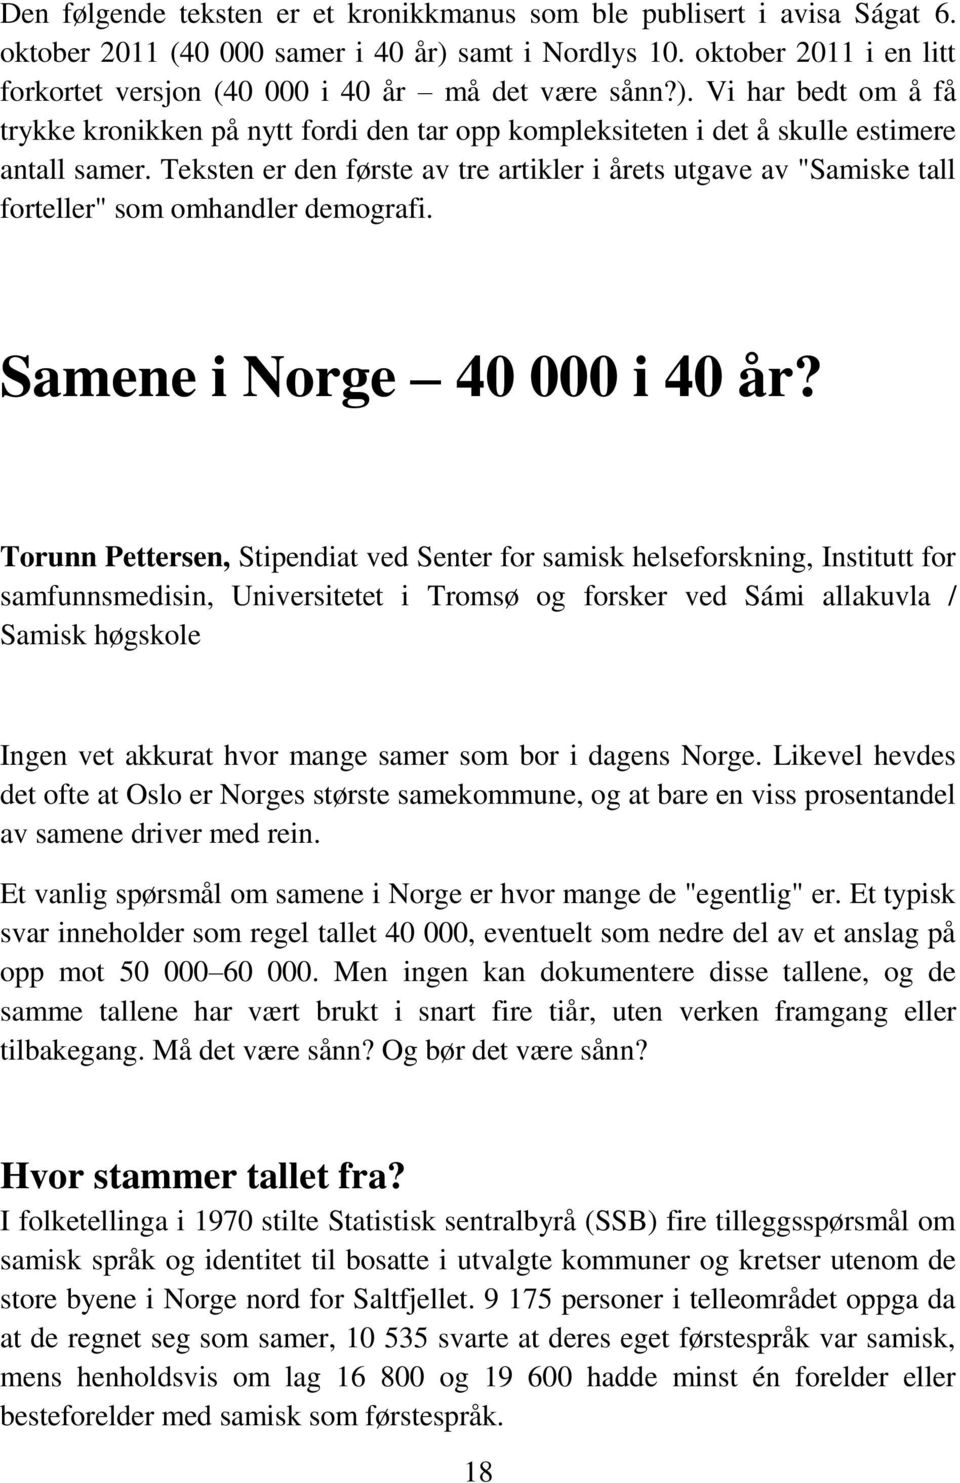 Teksten er den første av tre artikler i årets utgave av "Samiske tall forteller" som omhandler demografi. Samene i Norge 40 000 i 40 år?